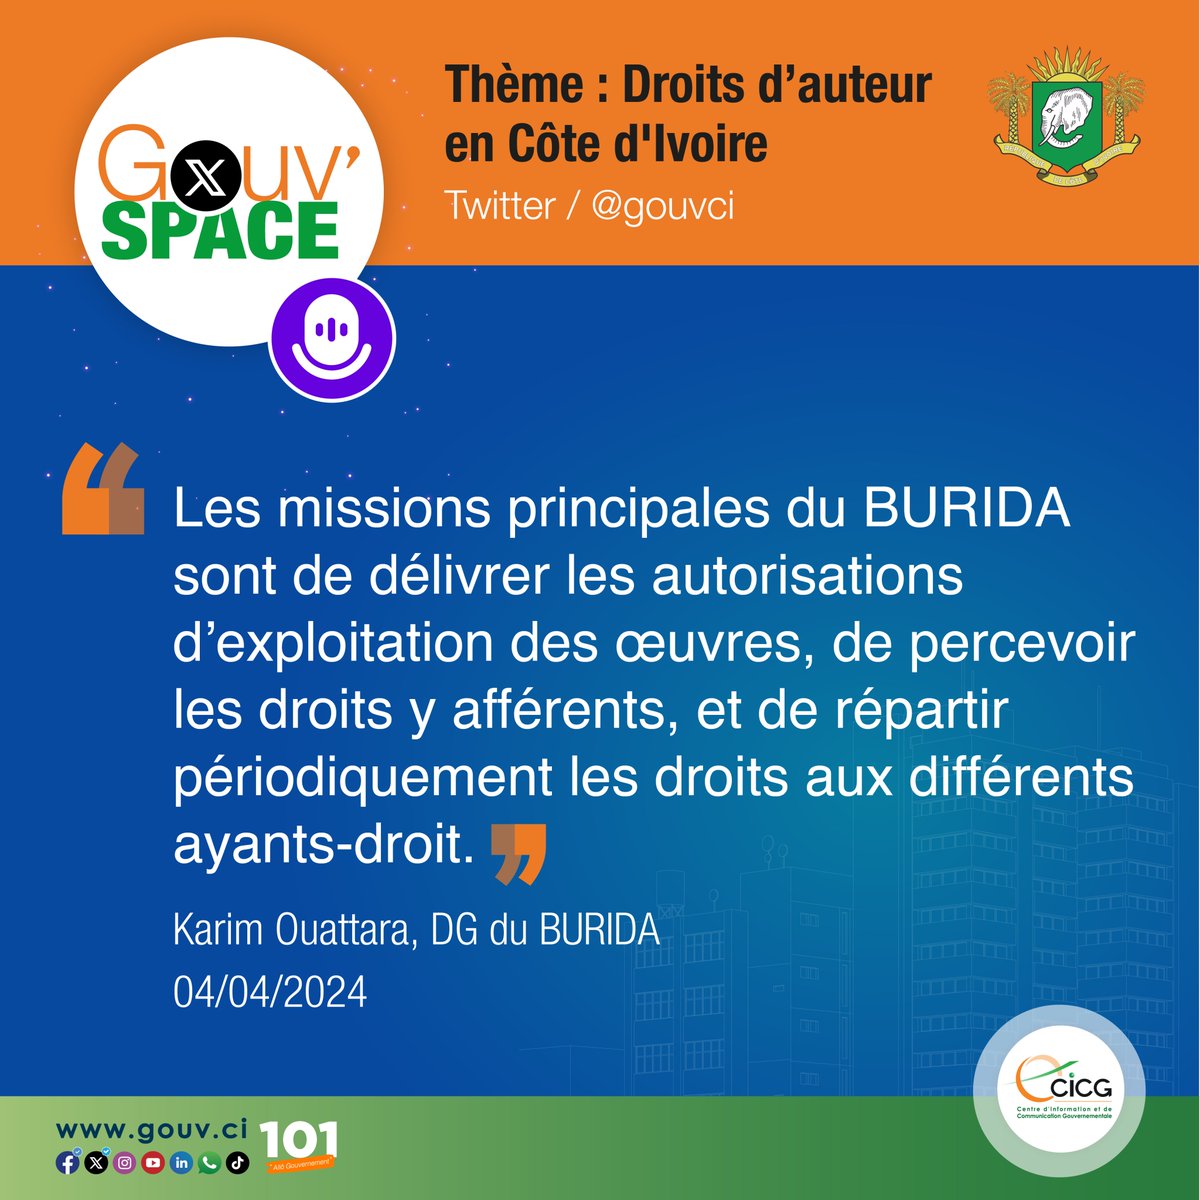 #GouvSpace | Ce qu’il faut retenir du Gouv'Space du jeudi 04 avril 2024 Thème : Les droits d'auteur en Côte d'Ivoire Réécoutez le Space ici 👉 twitter.com/i/spaces/1lPKq… #CICG #GouvCI